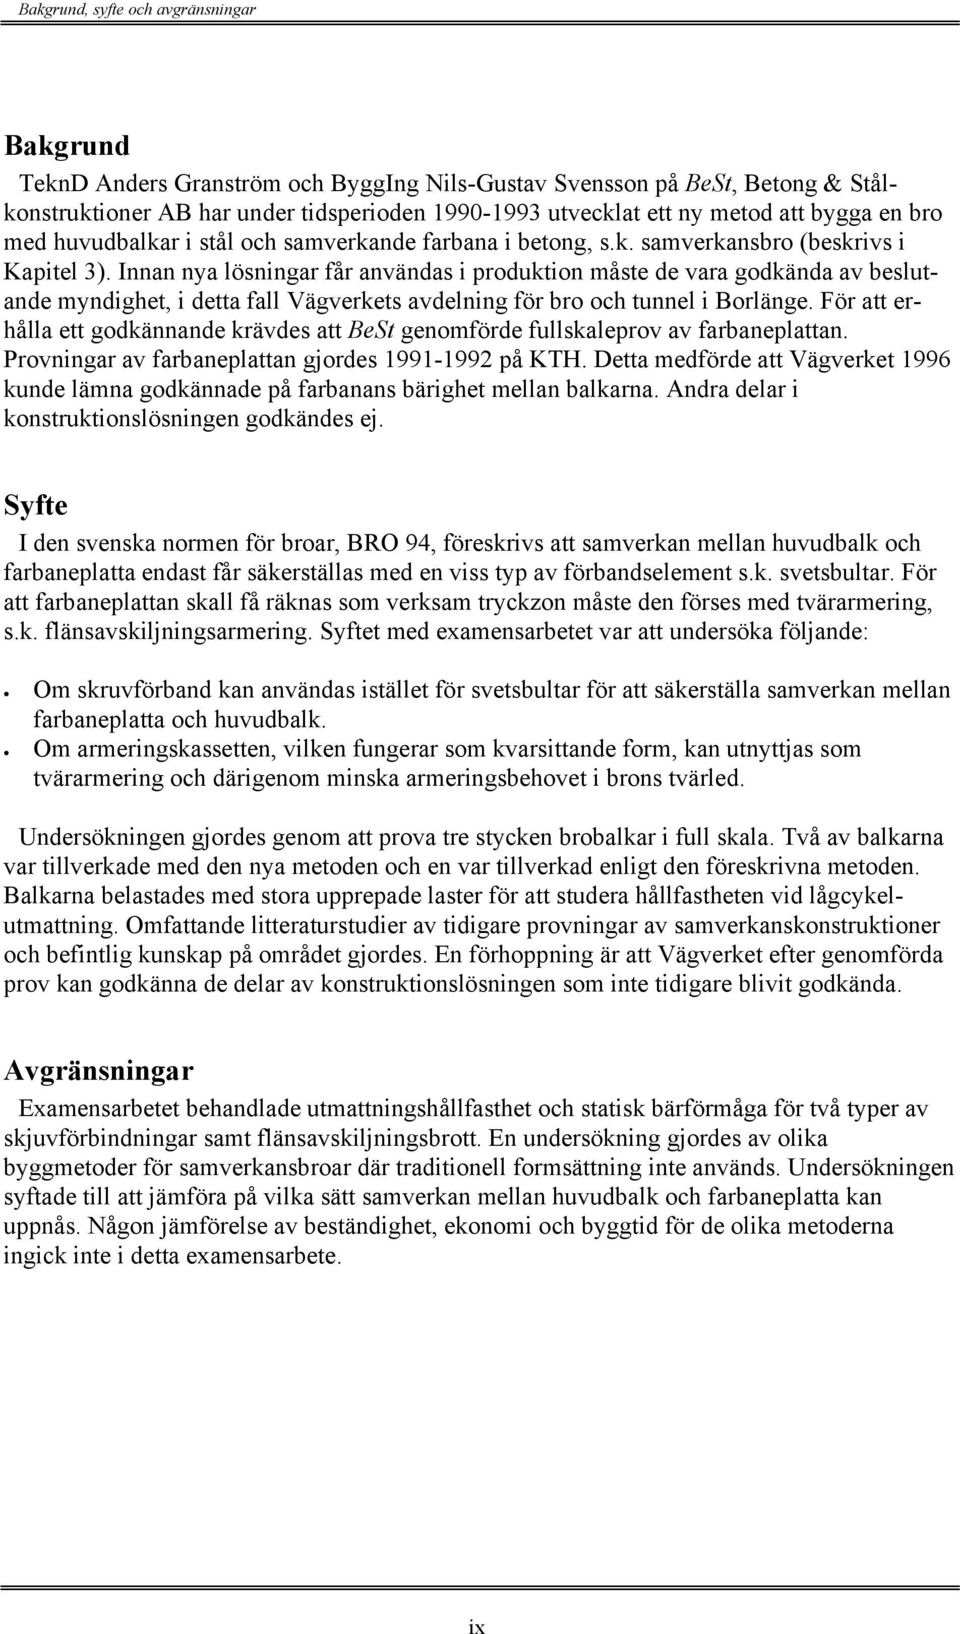 Innan nya lösningar får användas i produktion måste de vara godkända av beslutande myndighet, i detta fall Vägverkets avdelning för bro och tunnel i Borlänge.